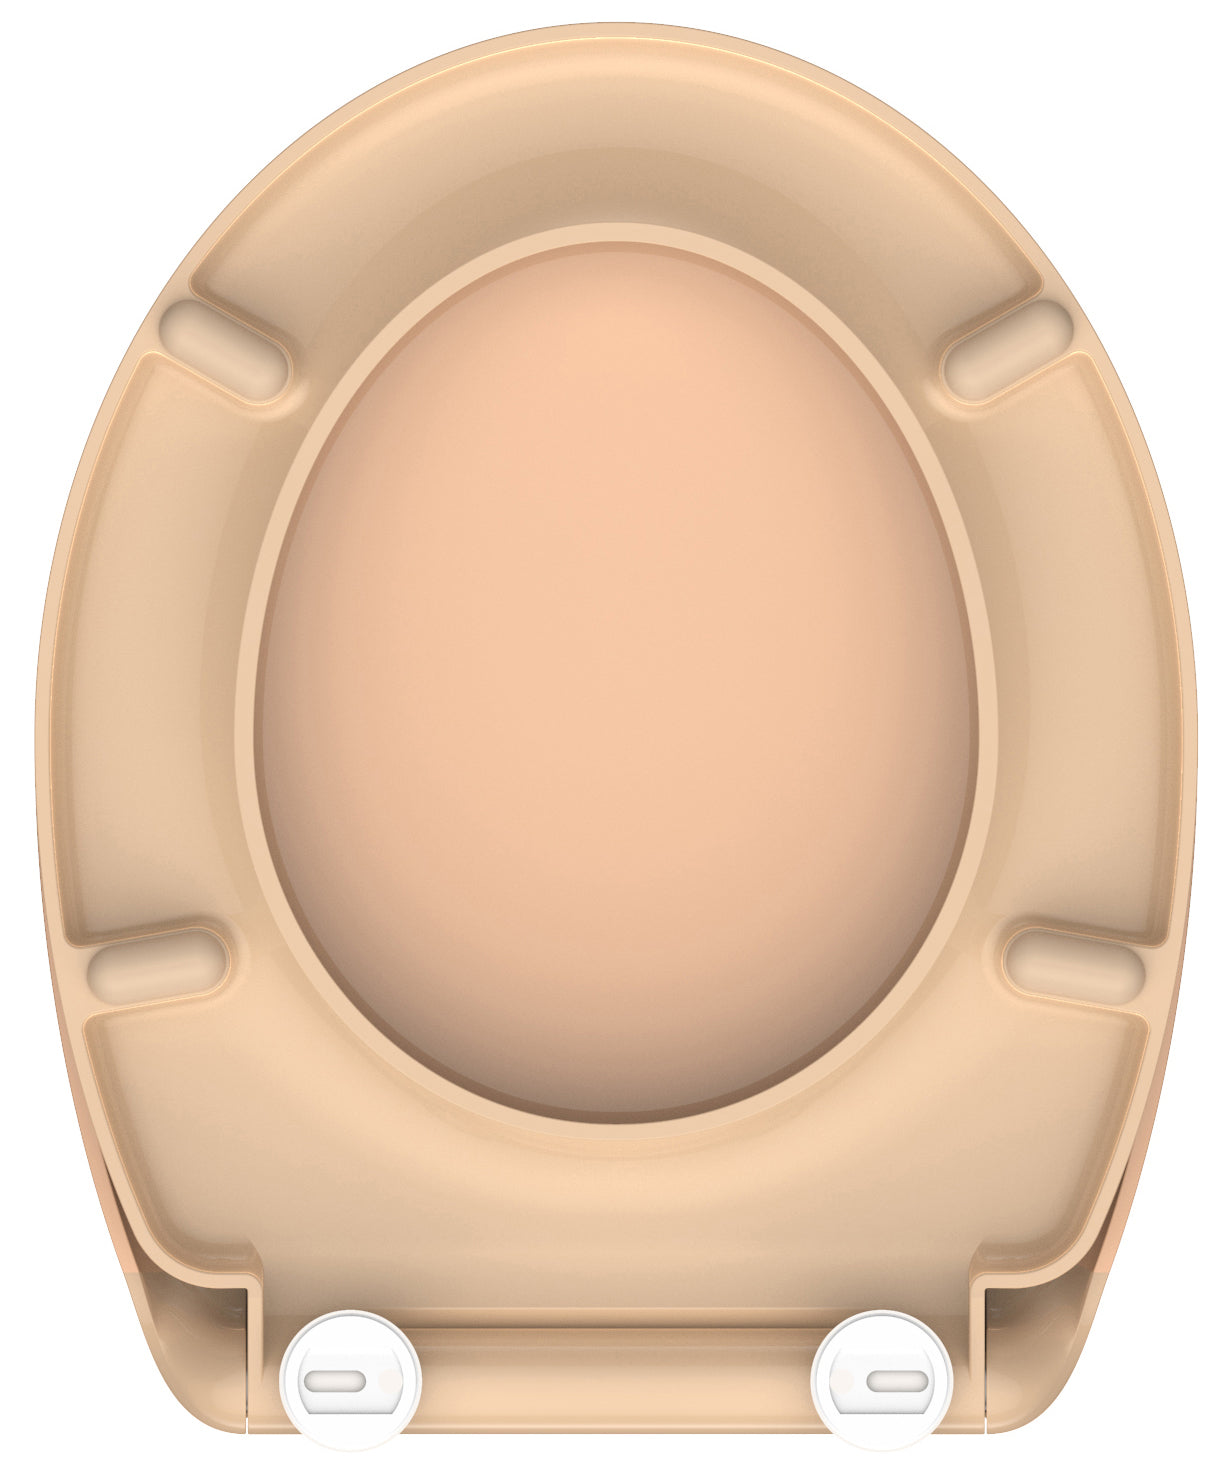 Beige toalettsits för vägghängd toalett - BÄST. CC-mått: 90-190mm Längd: 450mm Bredd: 375mm.